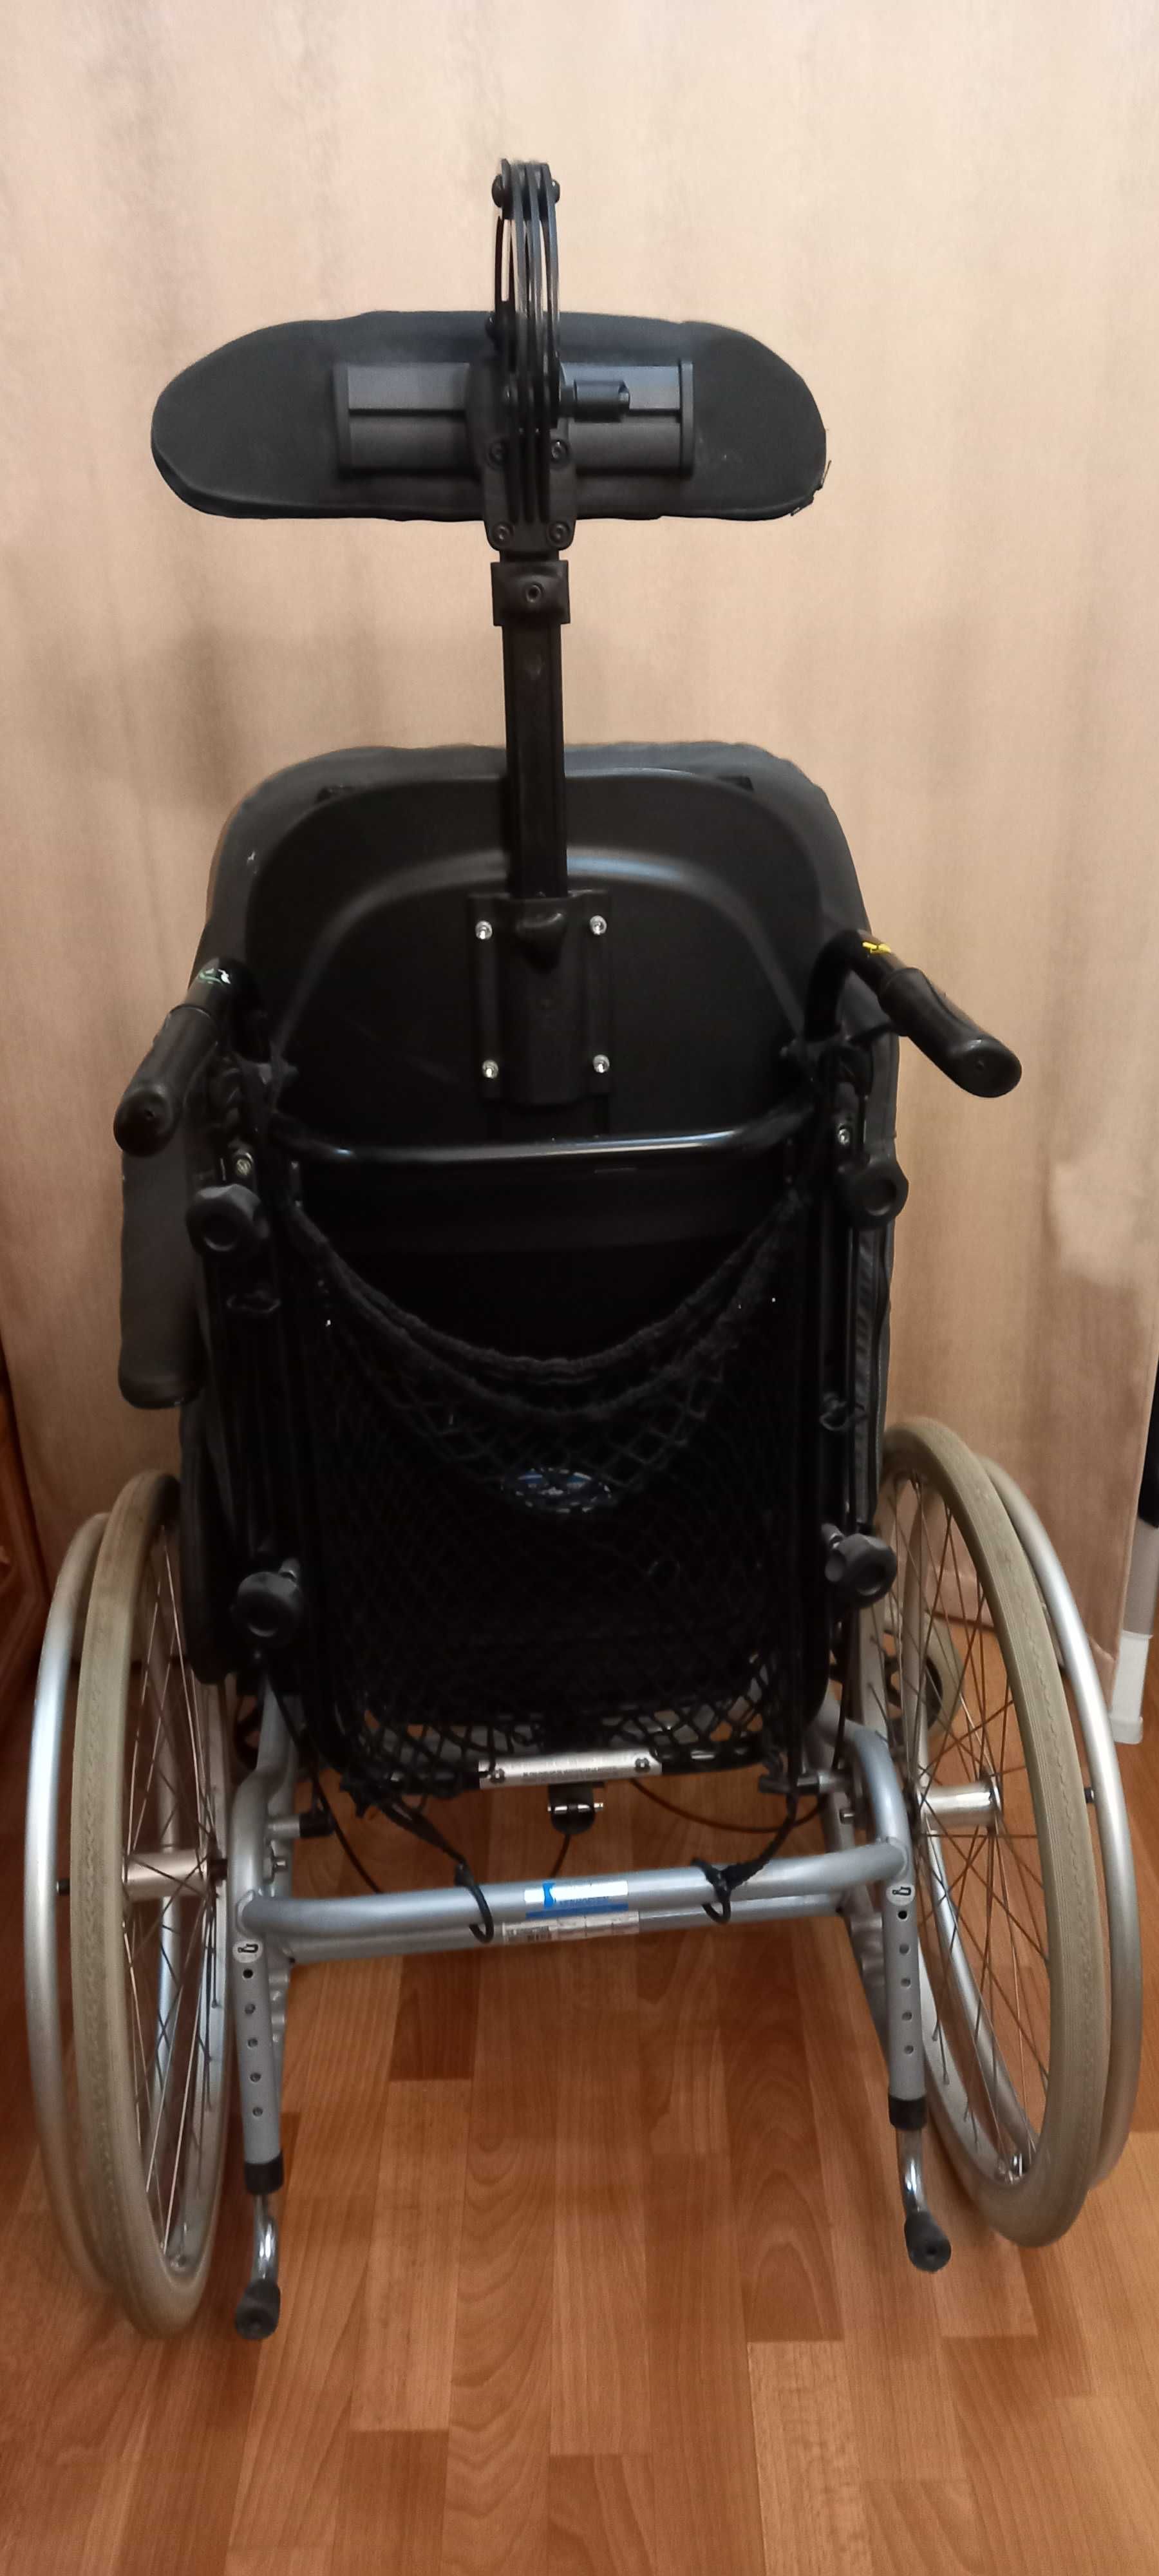 Коляска Rea Azalea багатофункціональна (інвалідне крісло).